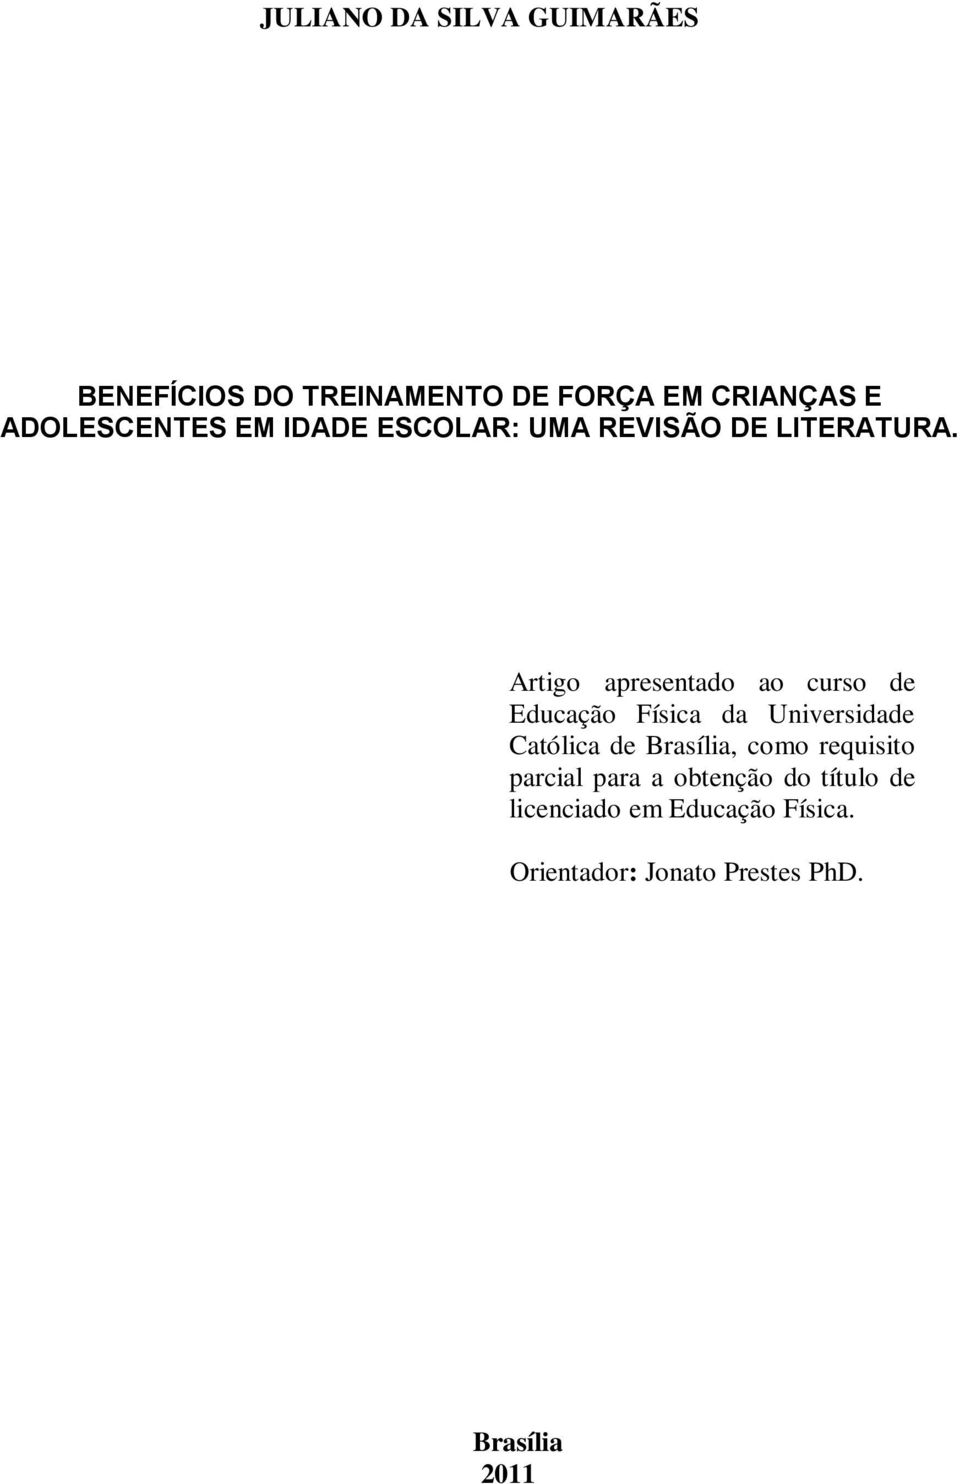 Artigo apresentado ao curso de Educação Física da Universidade Católica de Brasília,